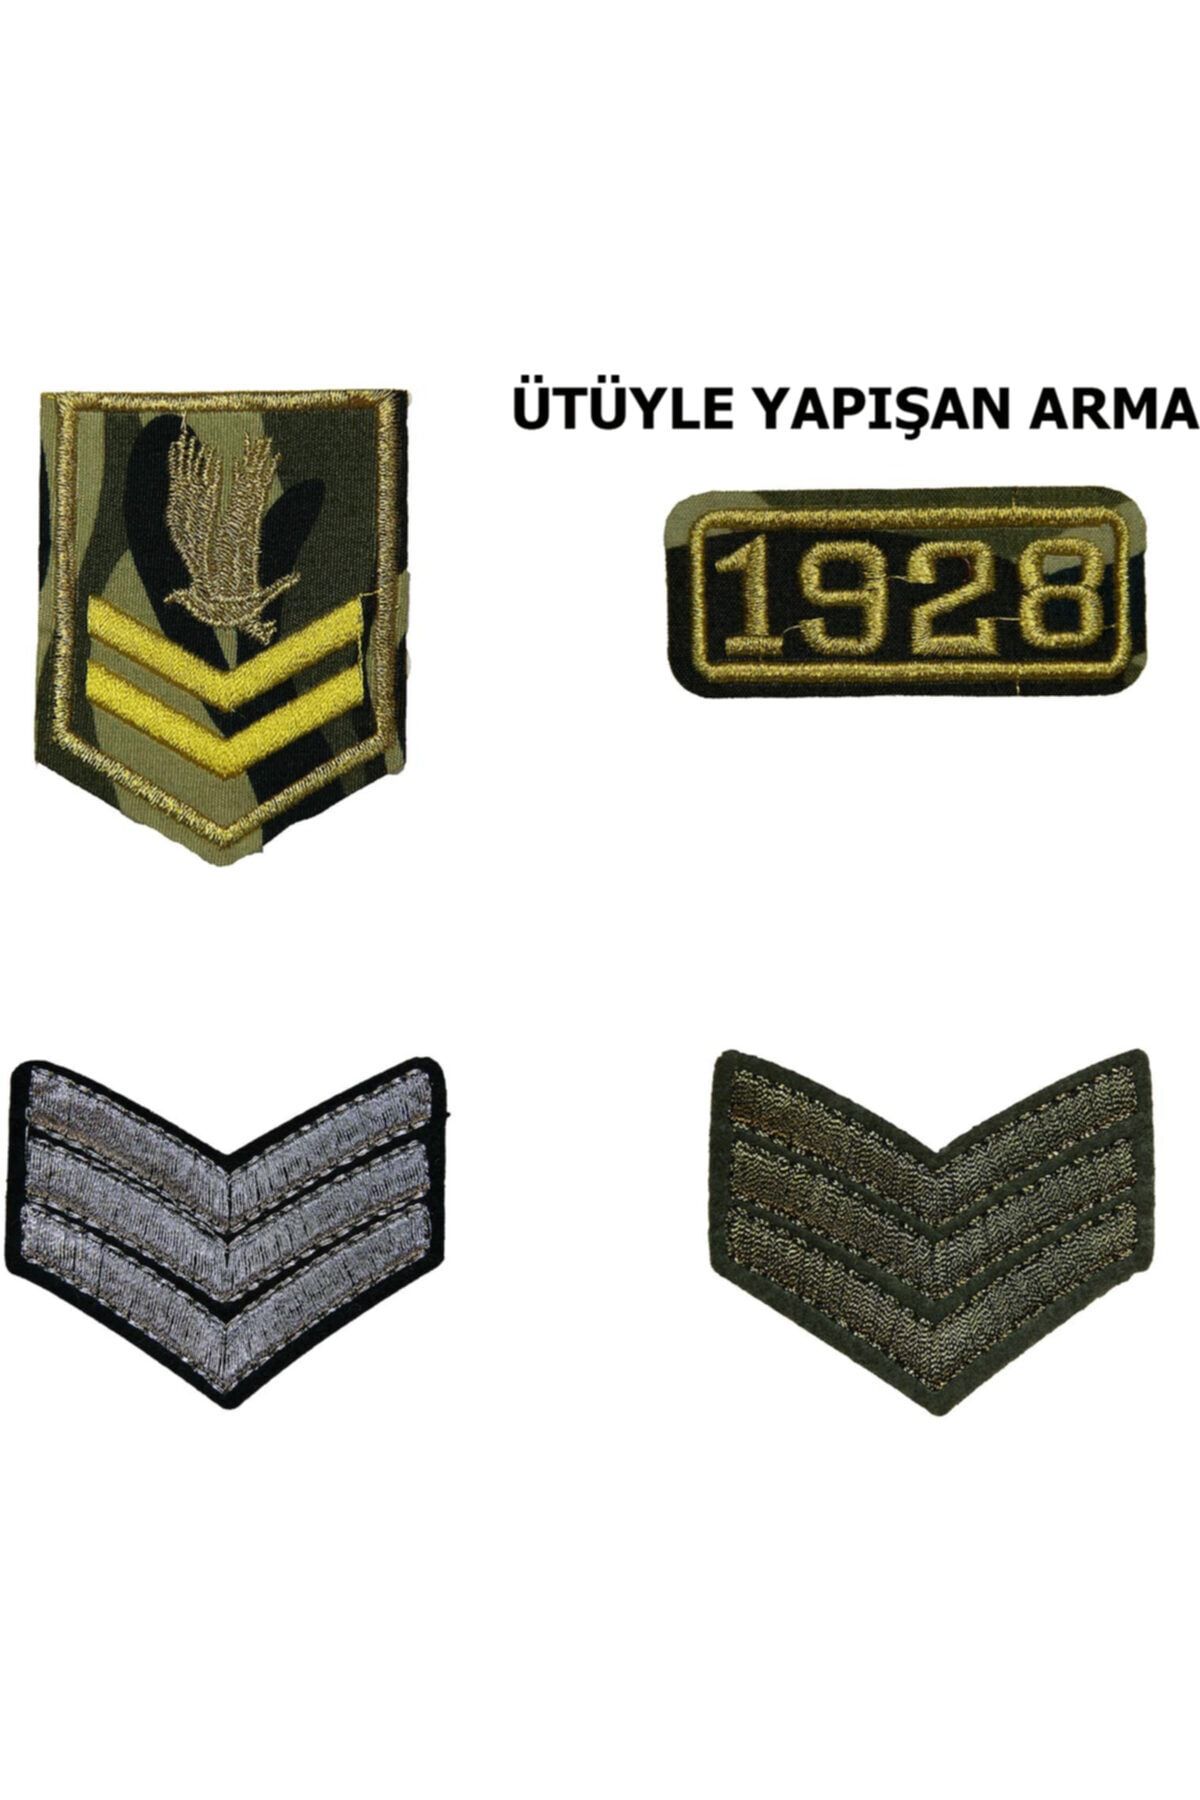 HALFART Askeri Seri 1 Arma Yama Patch Sticker